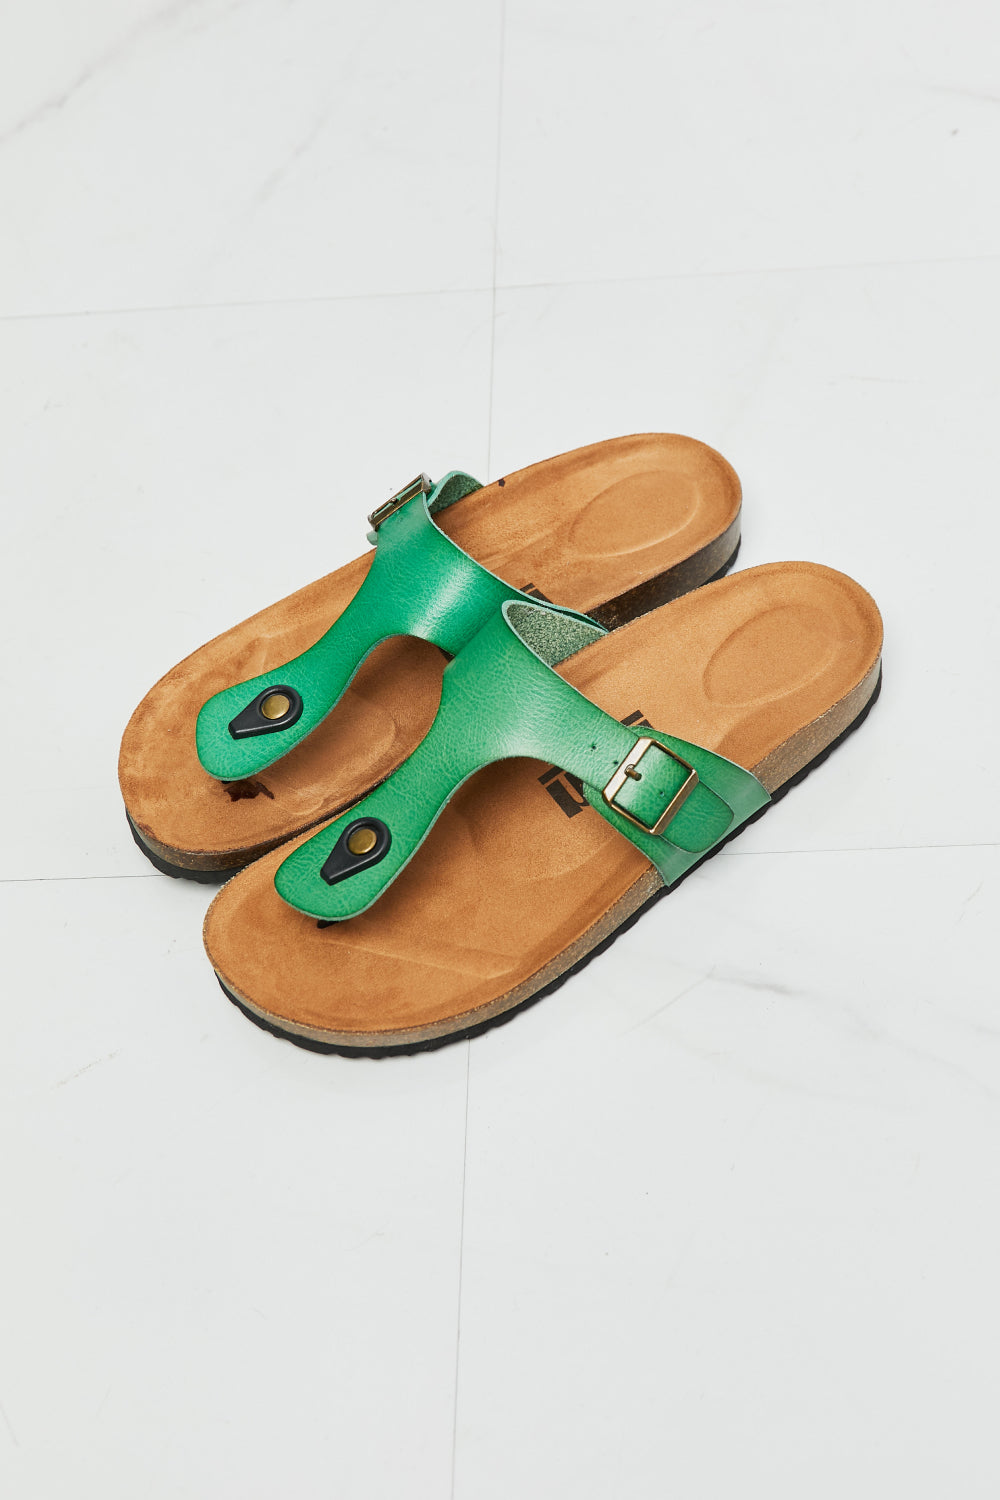 MMShoes T-Strap Flip-Flop Slide On Flat Cork Footbed Comfort Sandals in Green Drift Away